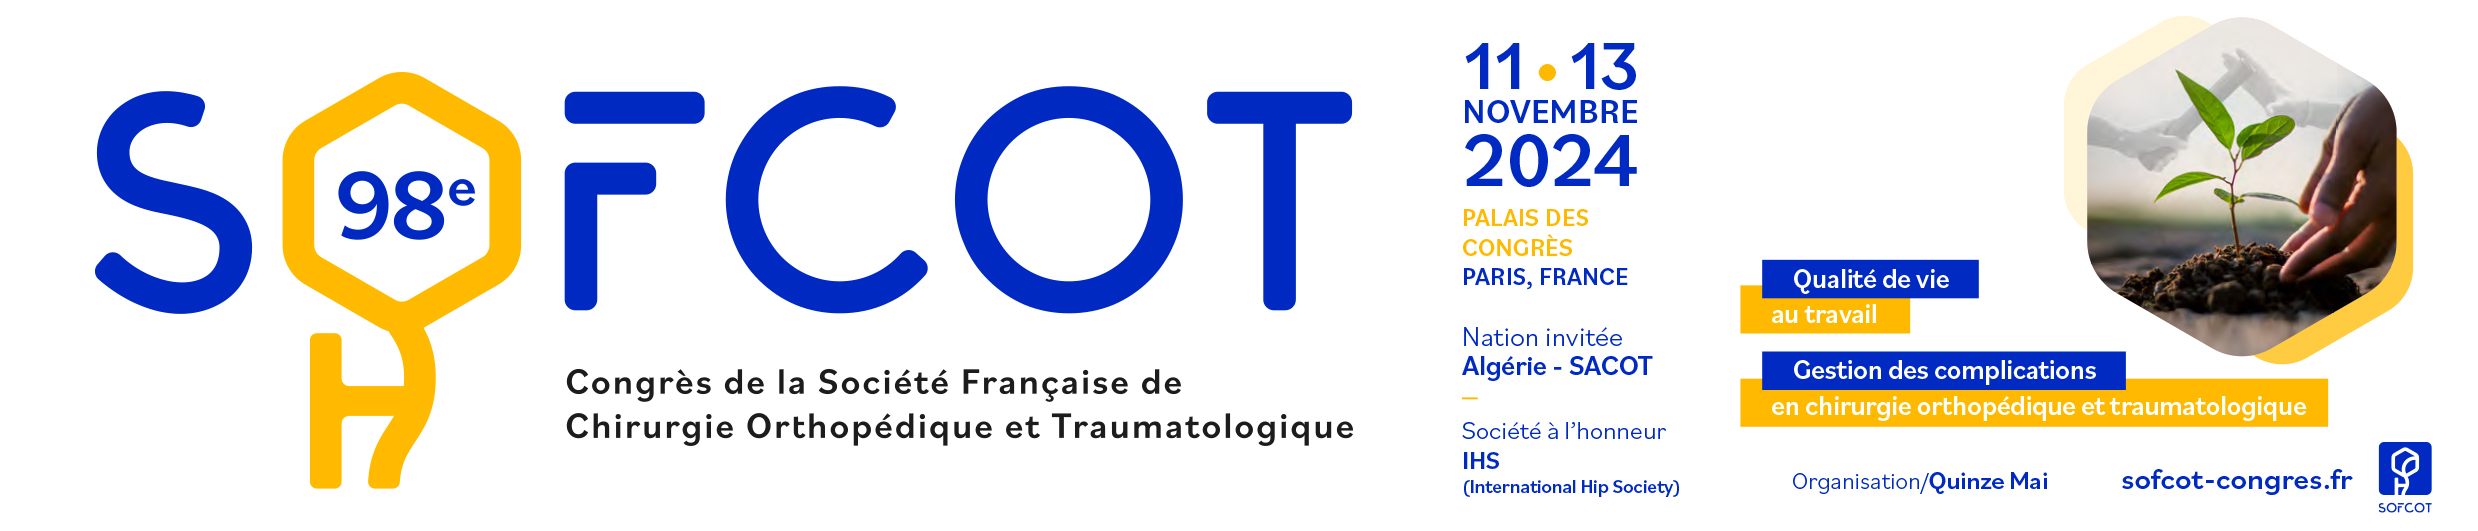 98e Congrès de la Société Française de Chirurgie Orthopédique & Traumatologique